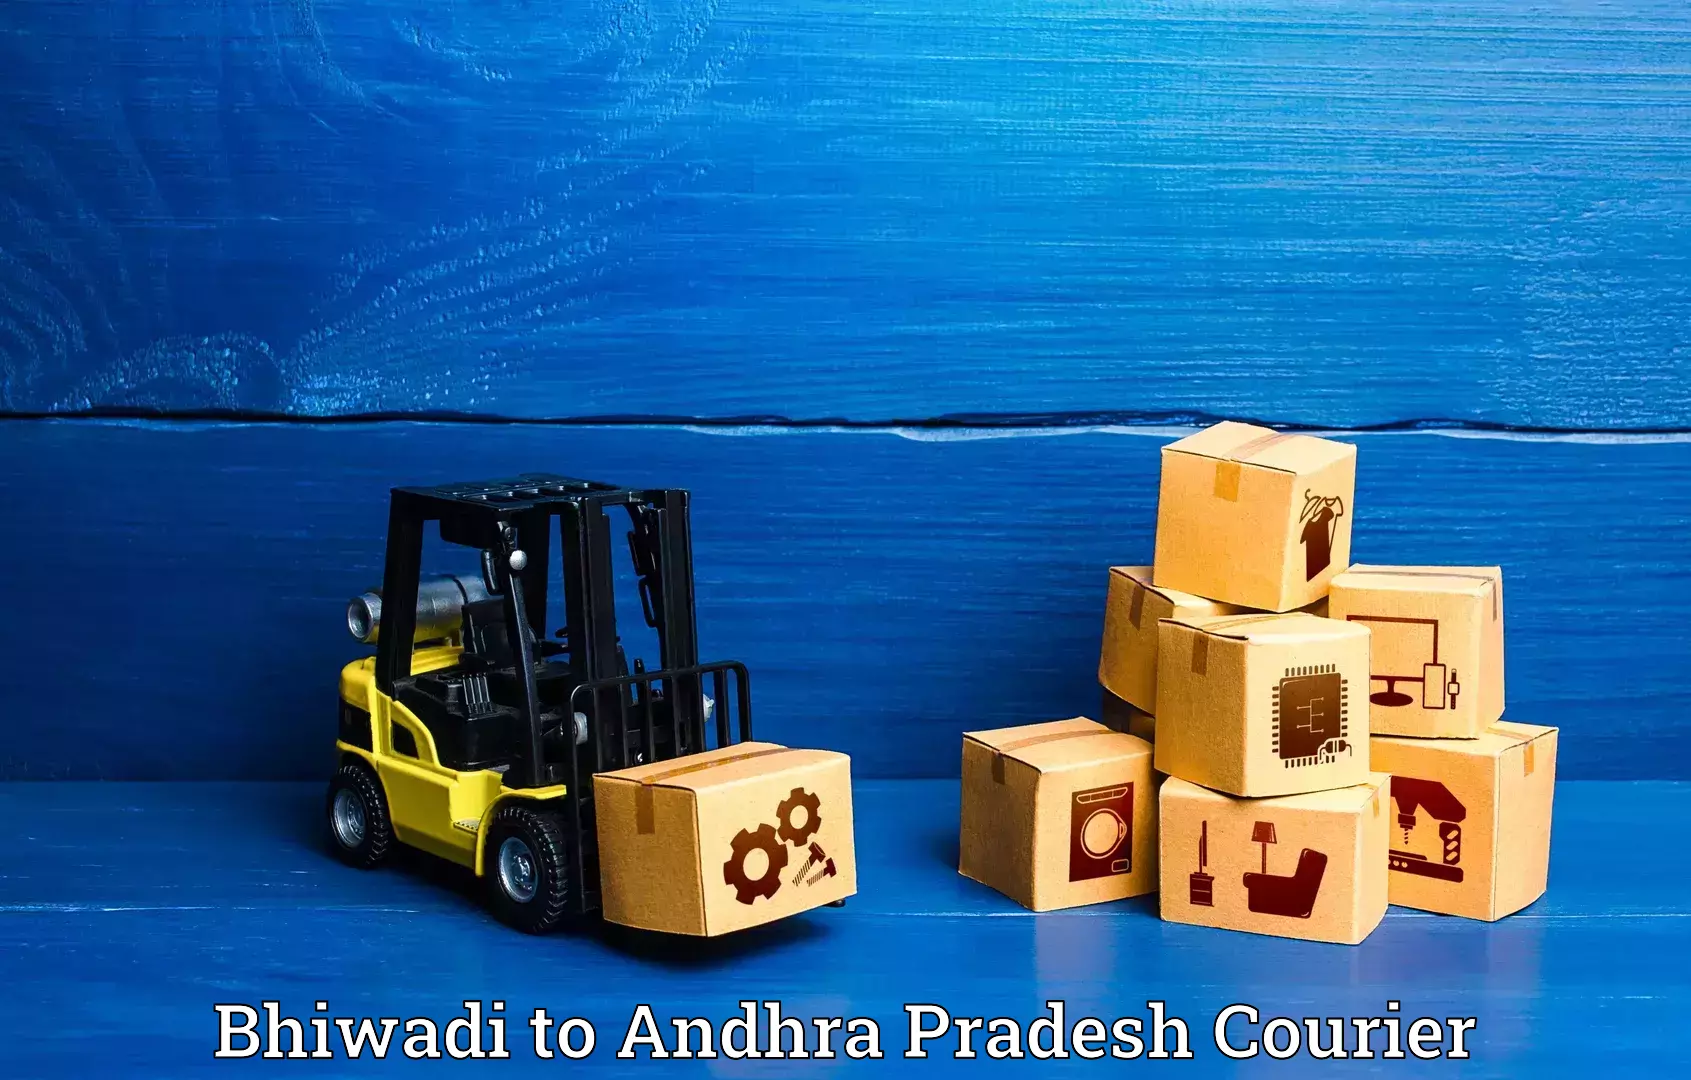 Luggage shipment strategy Bhiwadi to Draksharamam